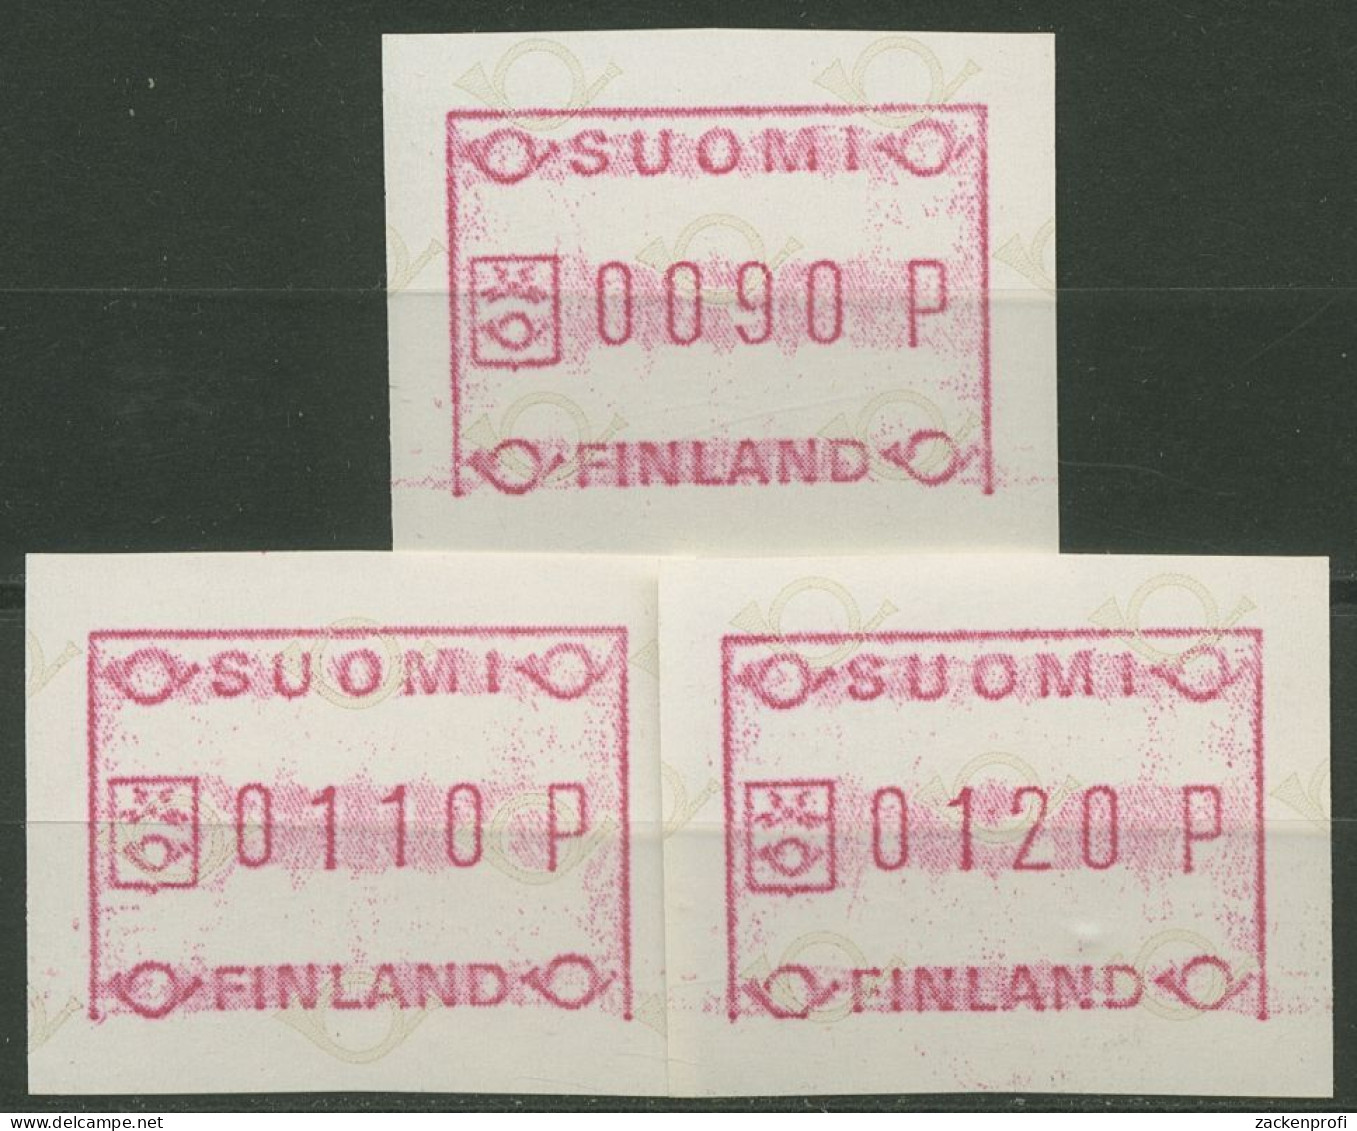 Finnland ATM 1982 Kl. Posthörner Grundlinie Fehlt Satz ATM 1.1 IV S 1 Postfrisch - Timbres De Distributeurs [ATM]